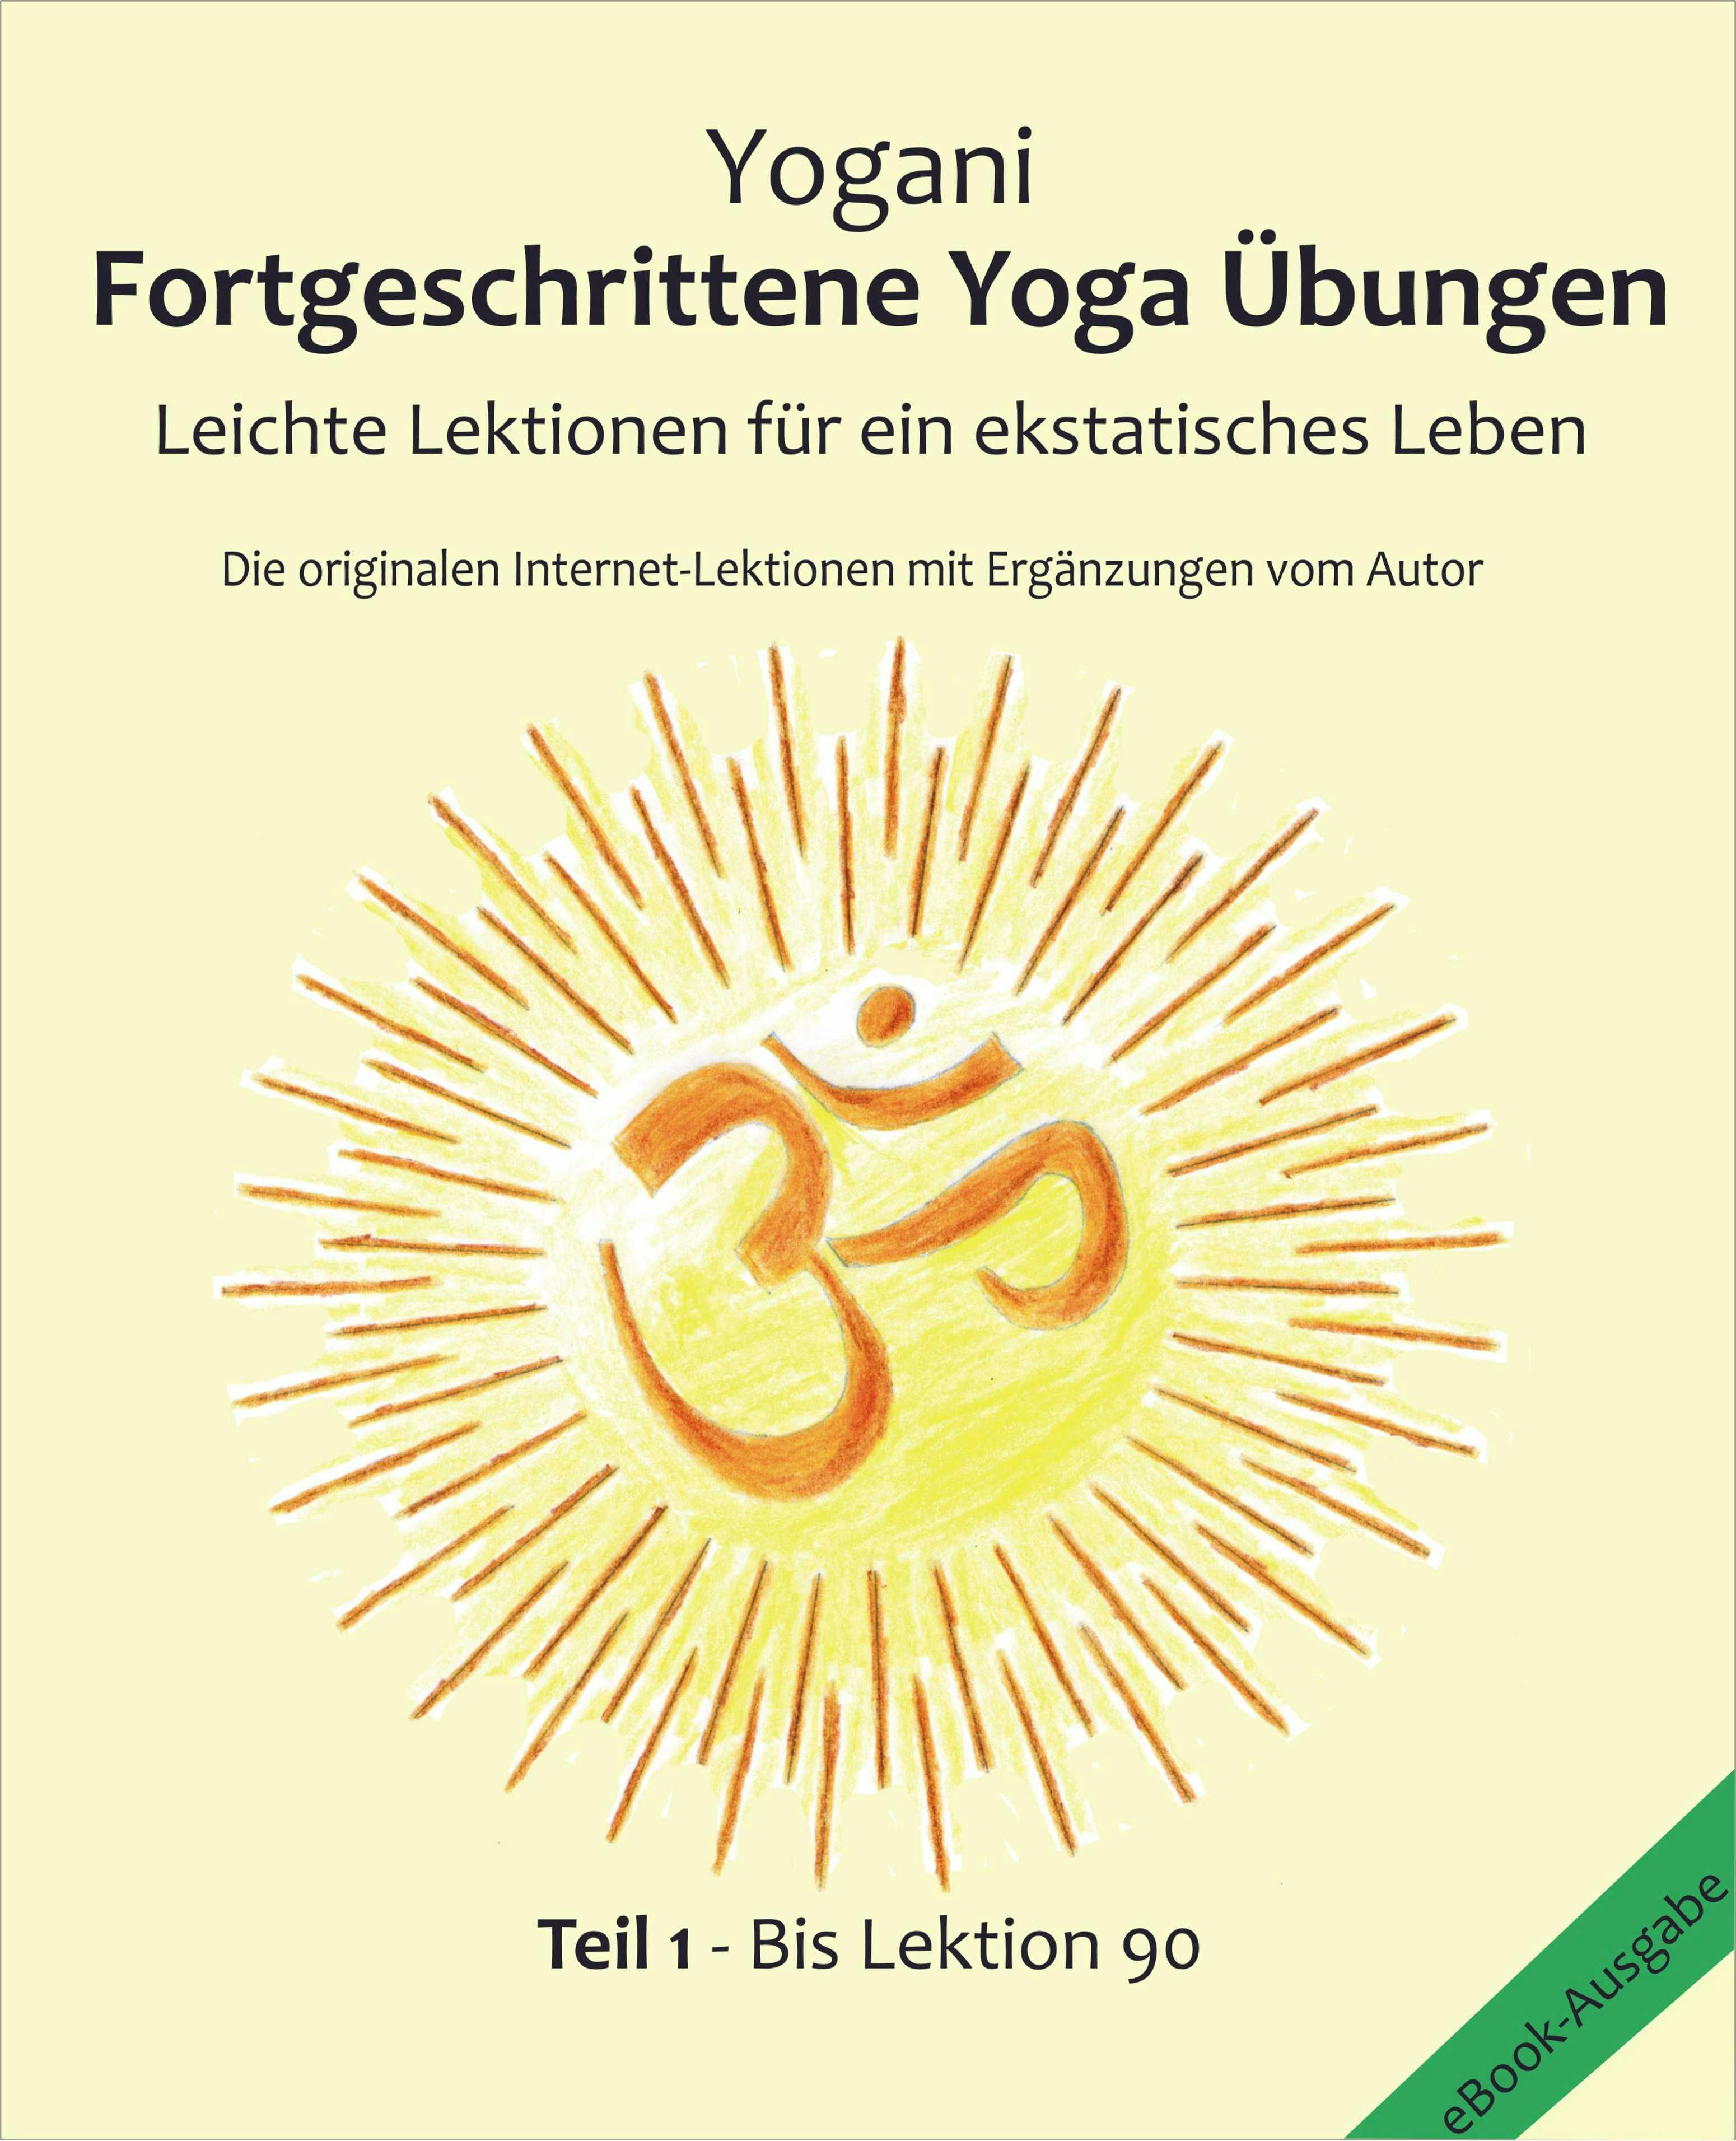 Fortgeschrittene Yoga Übungen - Teil 1: Leichte Lektionen für ein ekstatisches Leben - Lektionen 1 - 90, Die originalen Internet-Lektionen mit Ergänzungen vom Autor - Yogani, Bernd Prokop